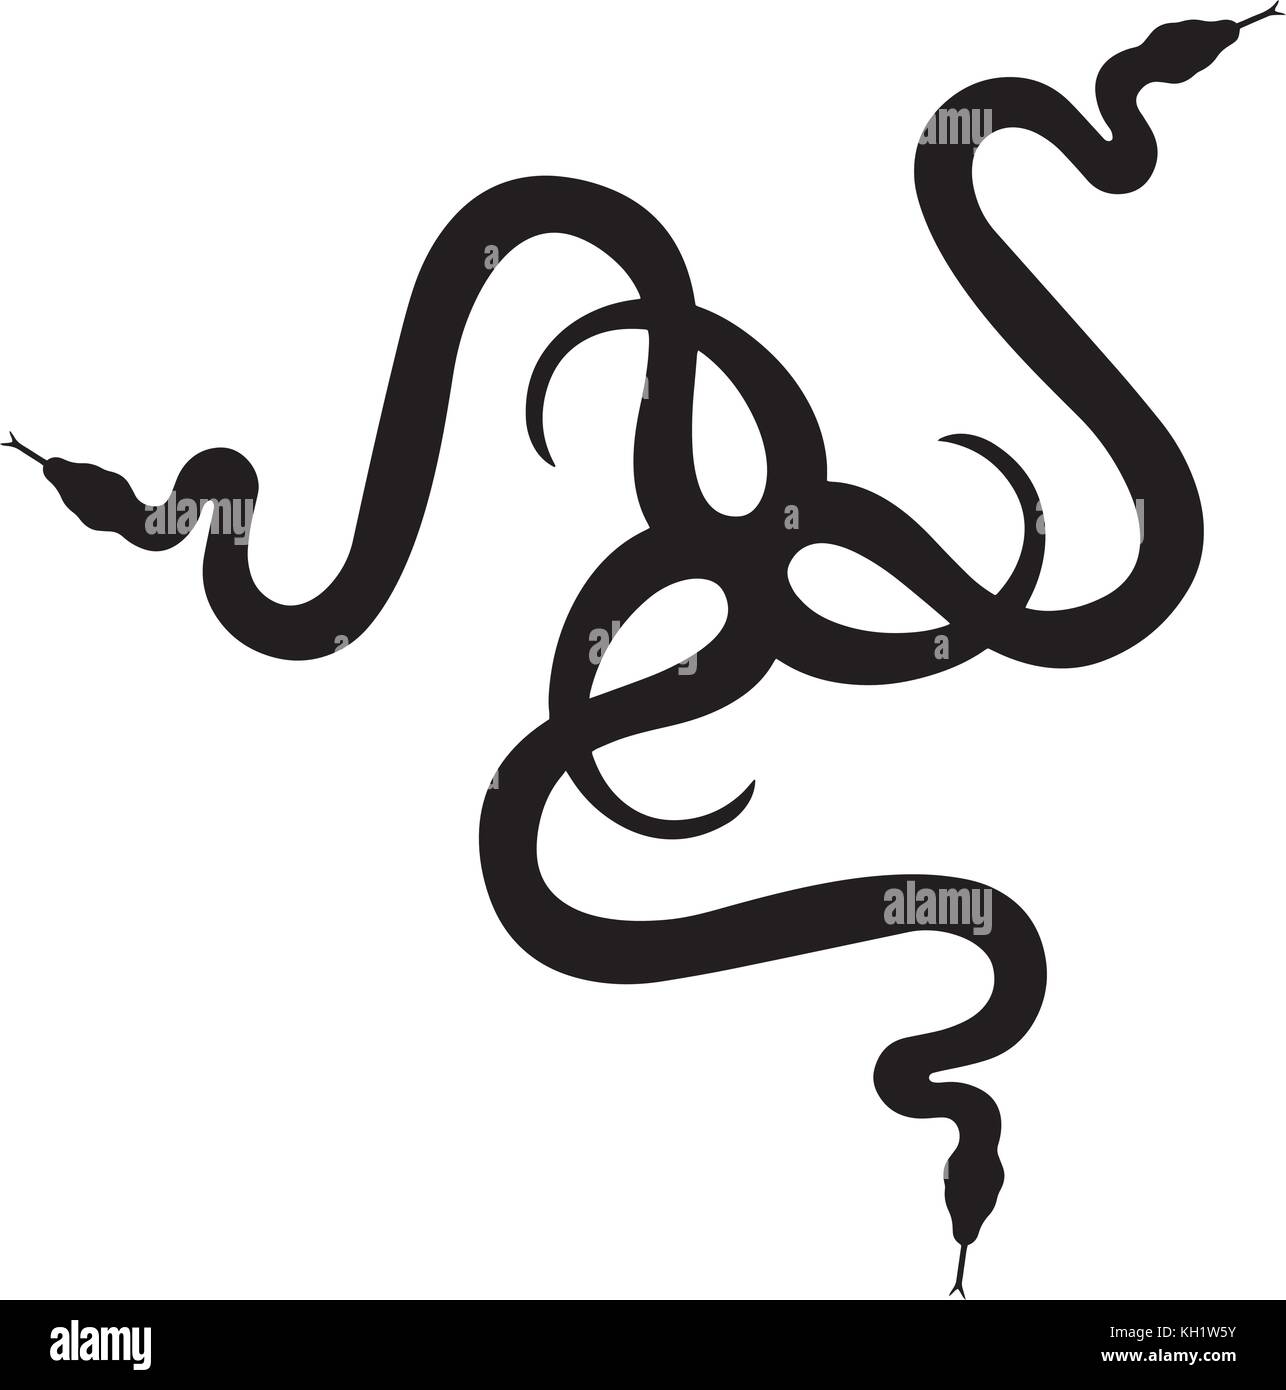 Snake logo Stock Vector